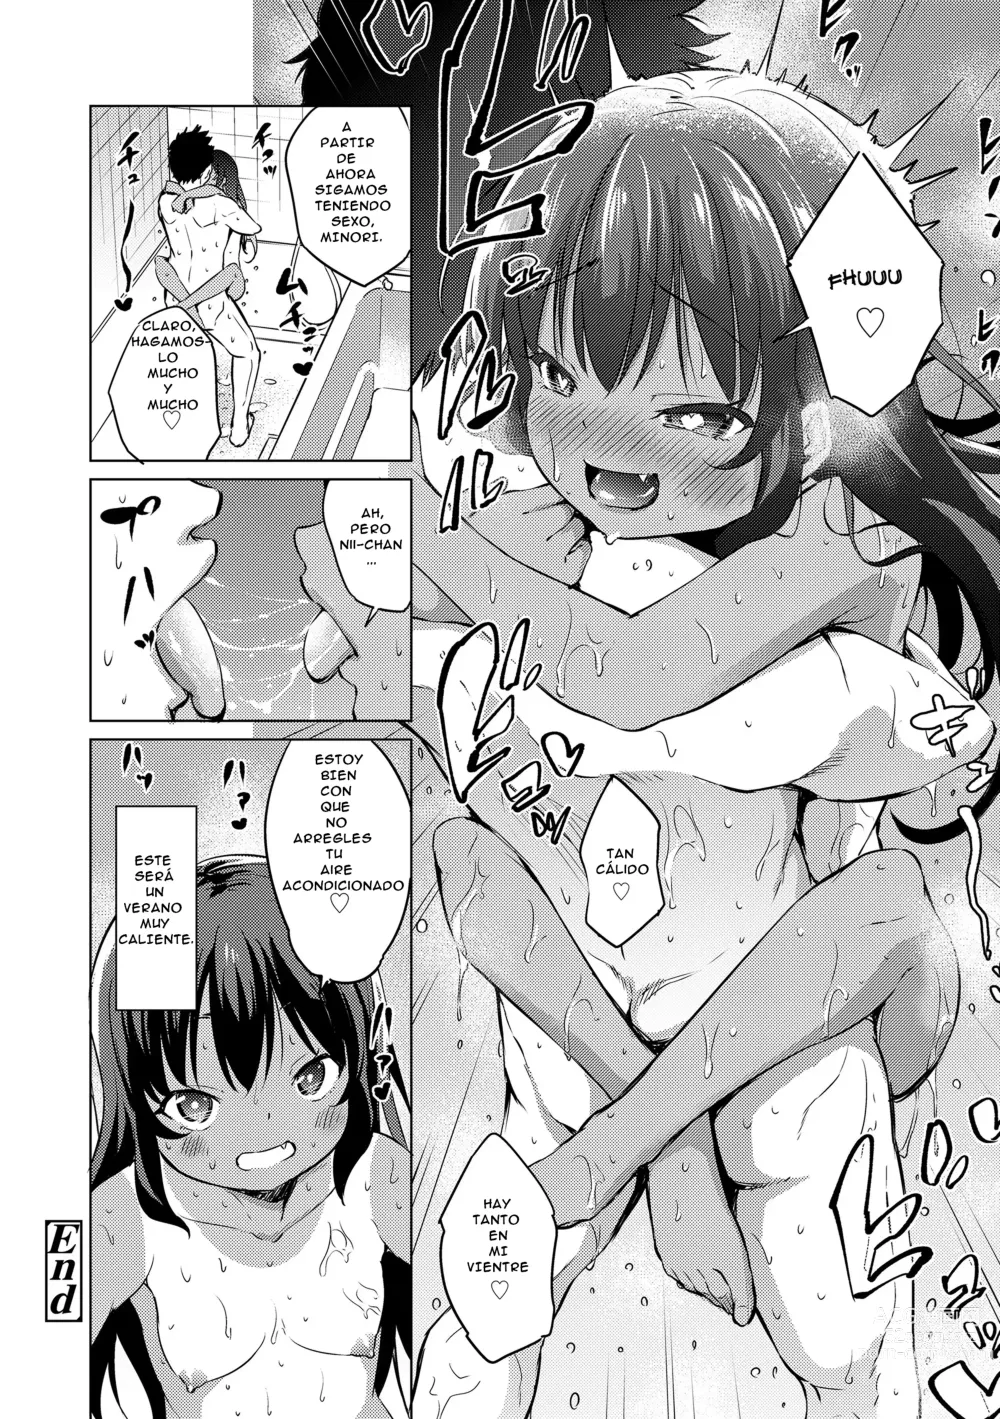 Page 22 of manga ¡No Puedo Dejar De Sudar! (decensored)